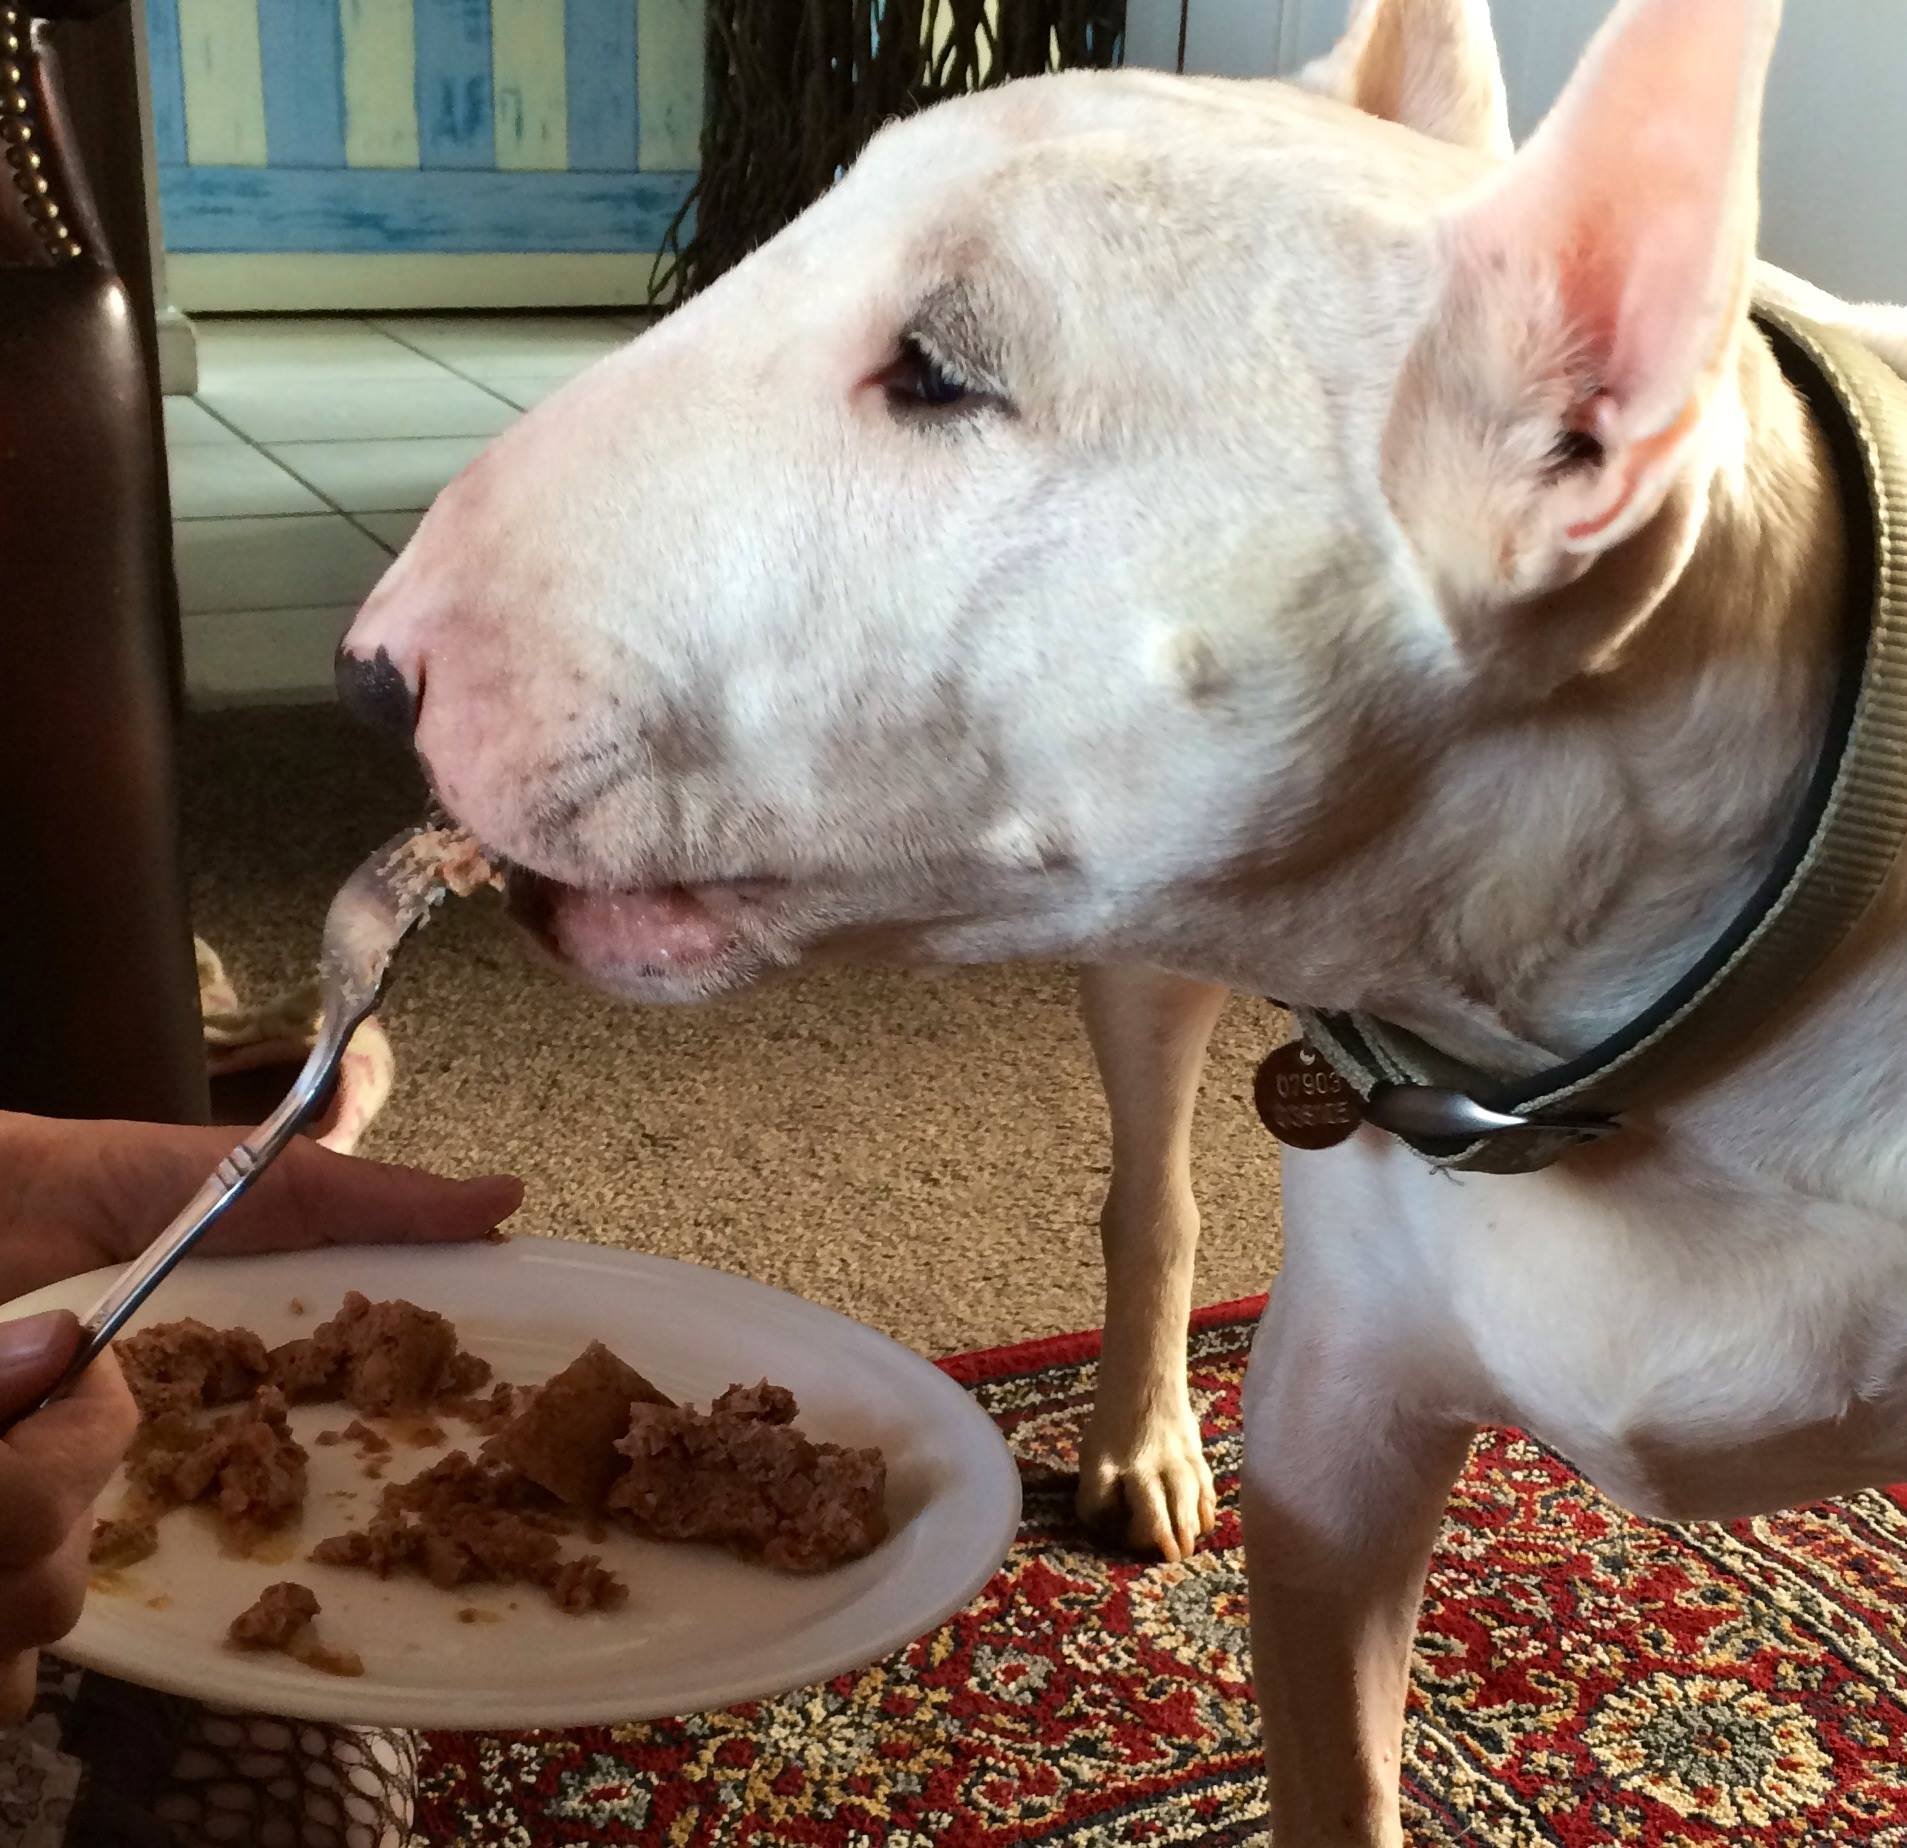 Resultado de imagen para bull terrier dog, eating biscuits